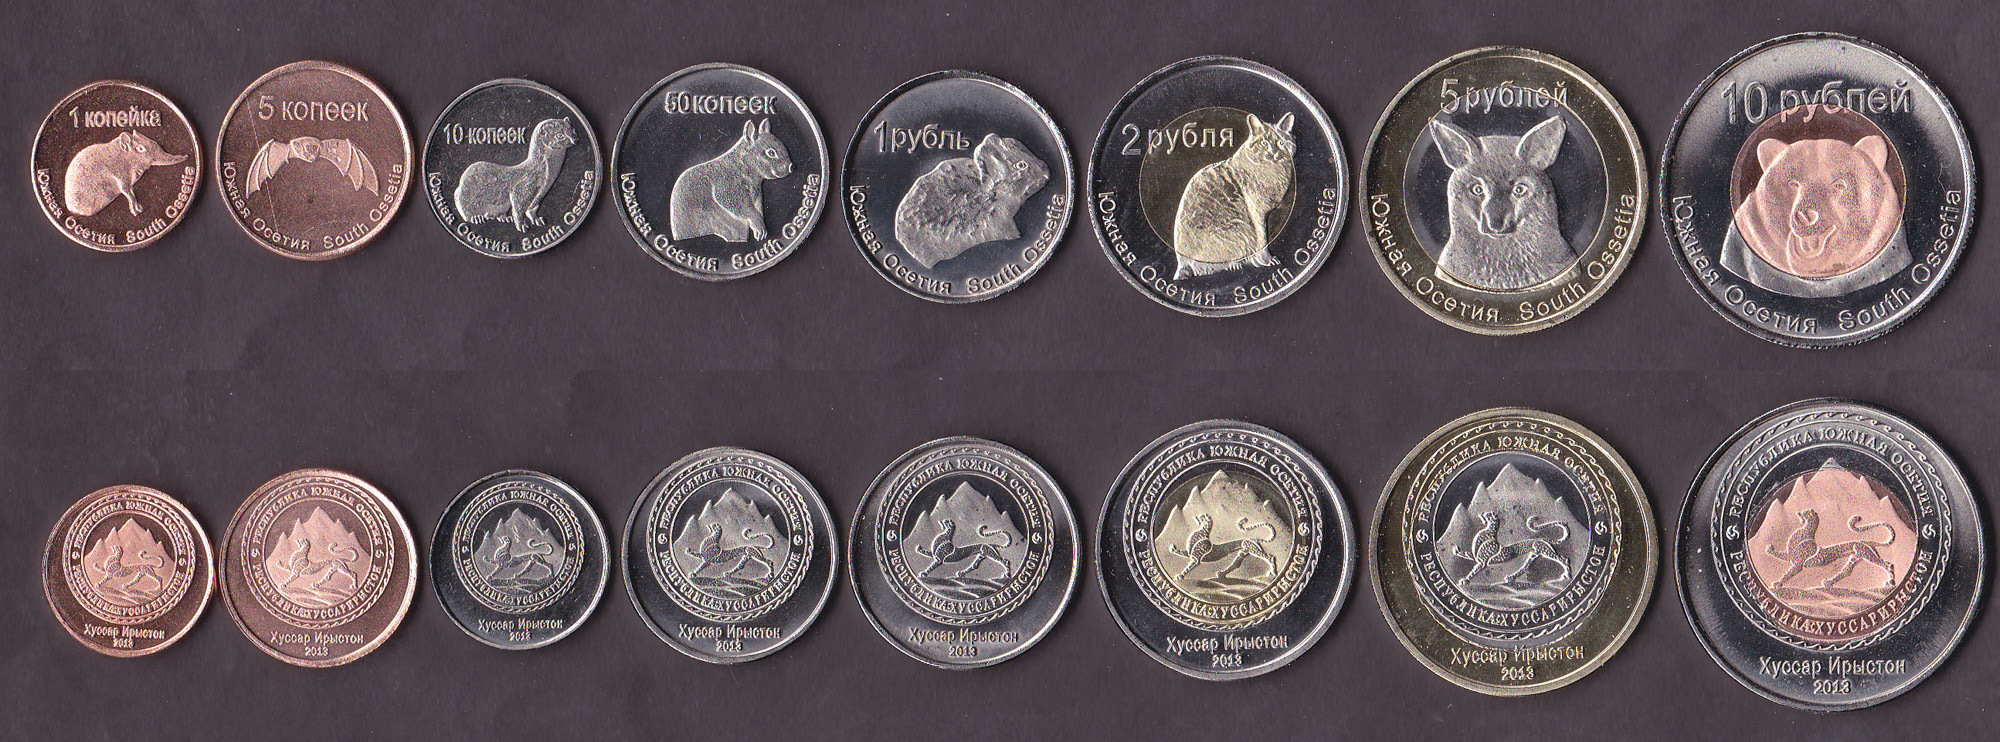 Осетия деньги. Монеты Южной Осетии. Валюта Южной Осетии. Драгоценные монеты Абхазии. Абхазия набор 8 монет 2013.